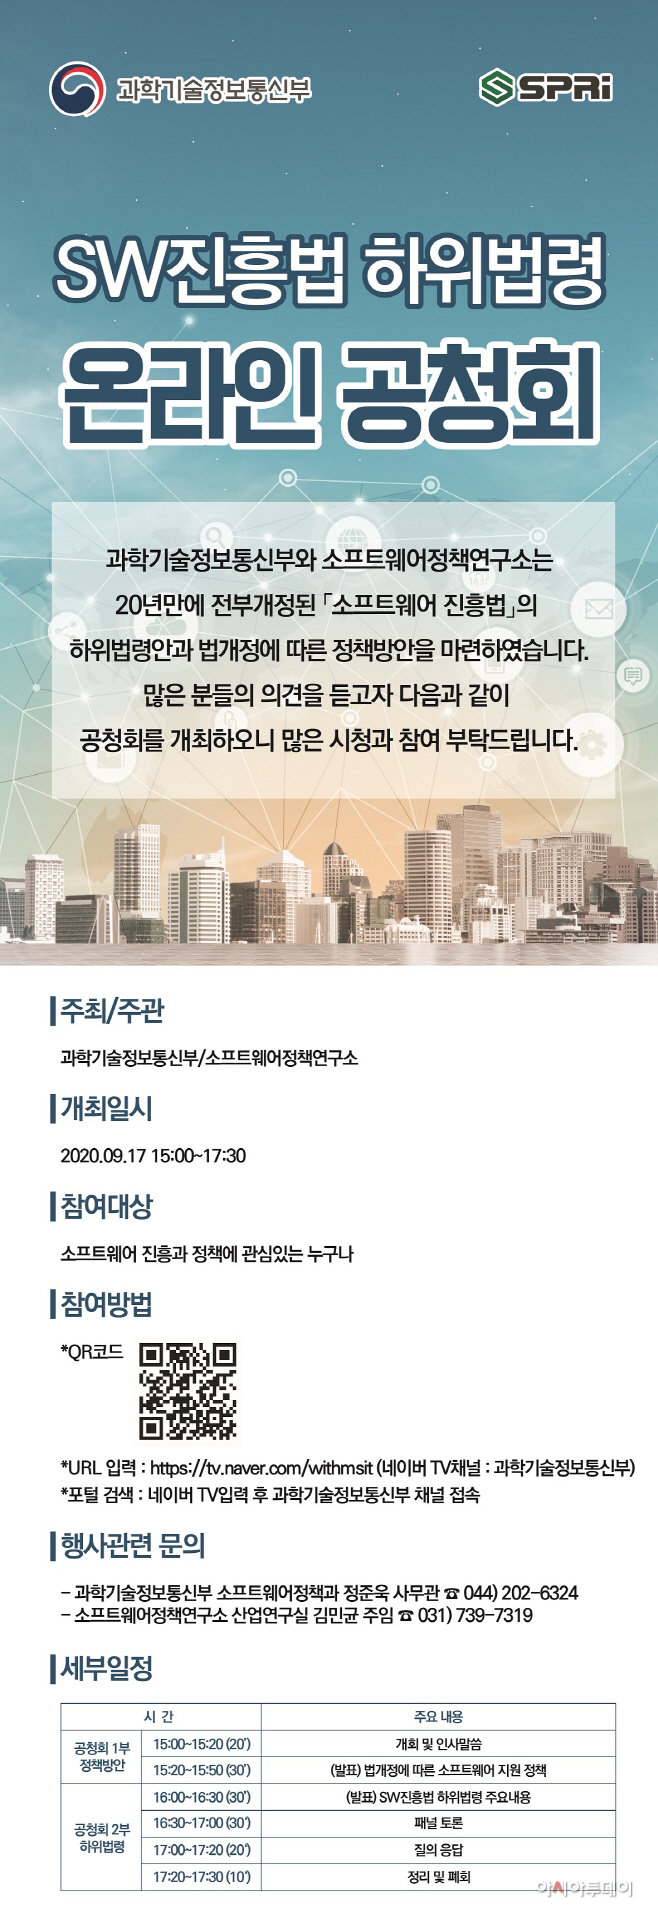 포스터_소프트웨어 진흥법 하위법령 공청회 개최 안내문